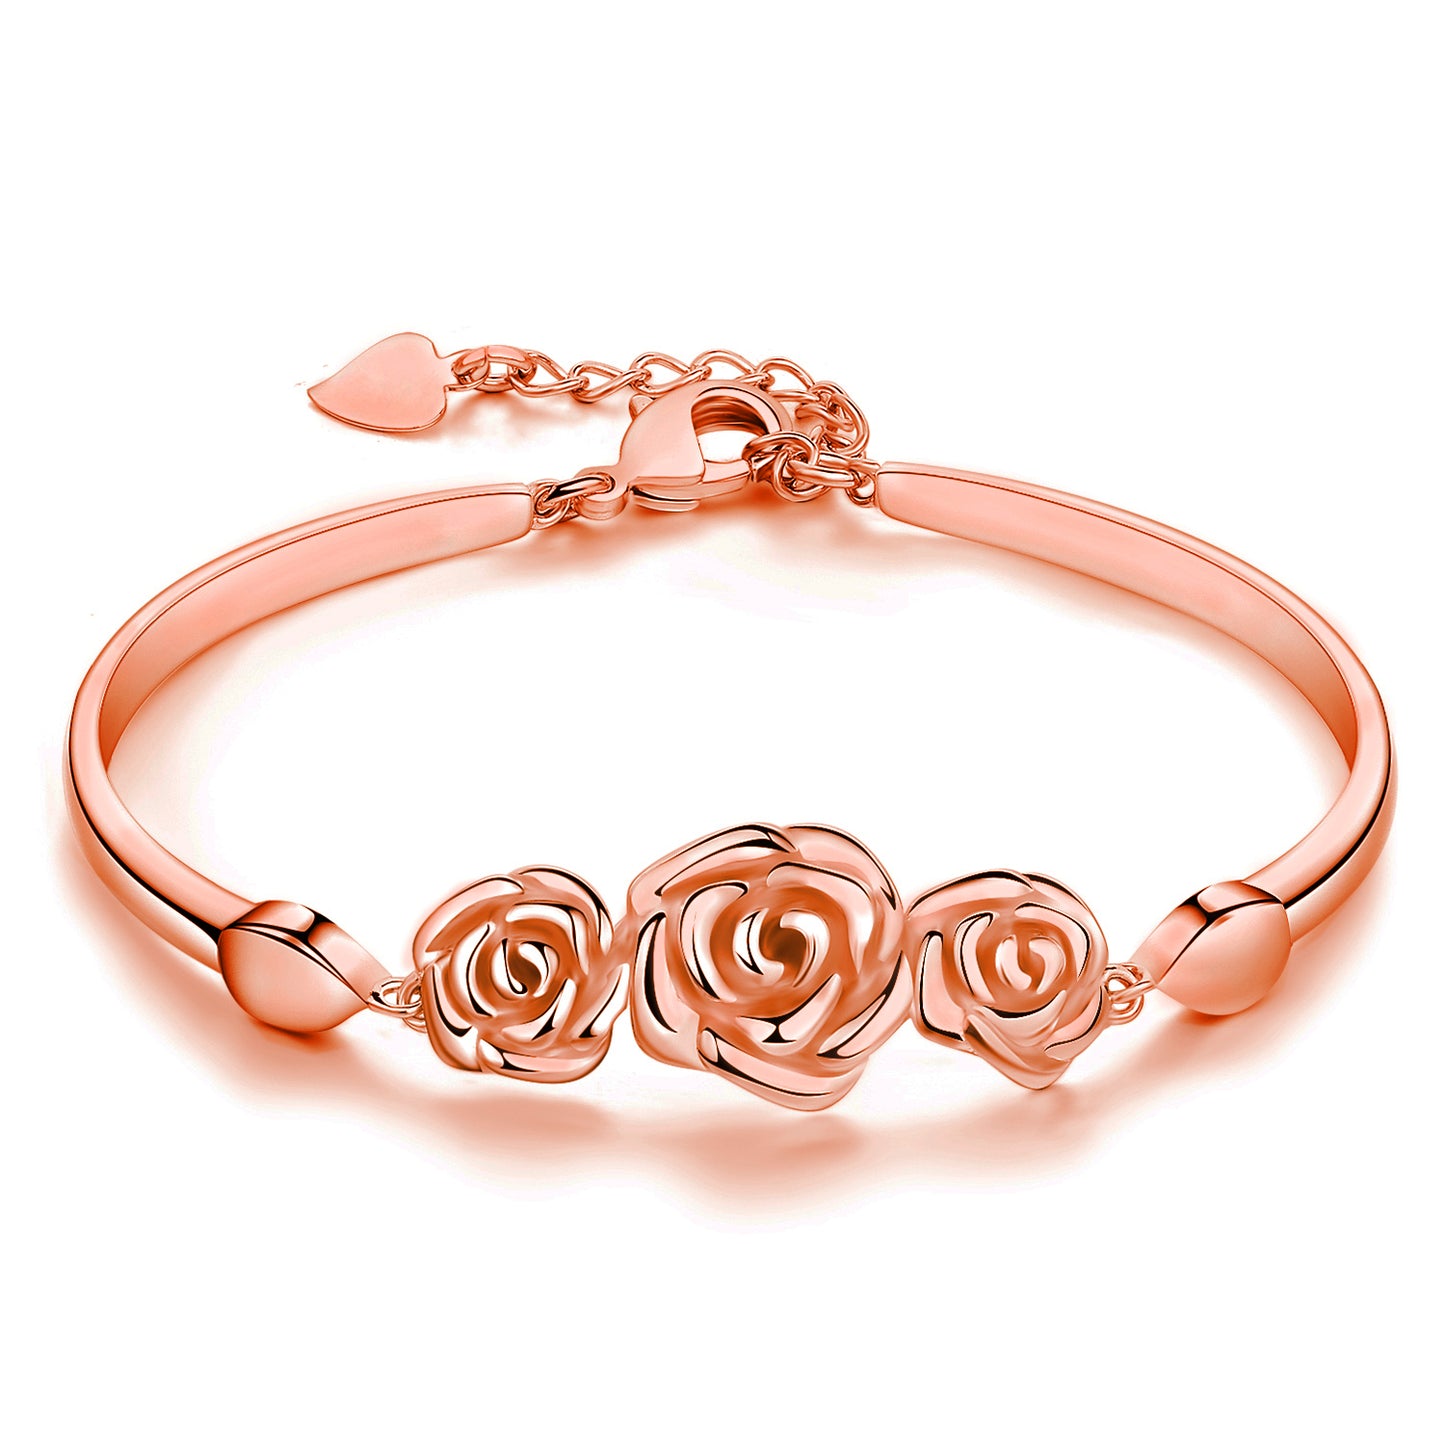 14k Gold Plated Fashion Rose Flower Link Bangle Bracelets